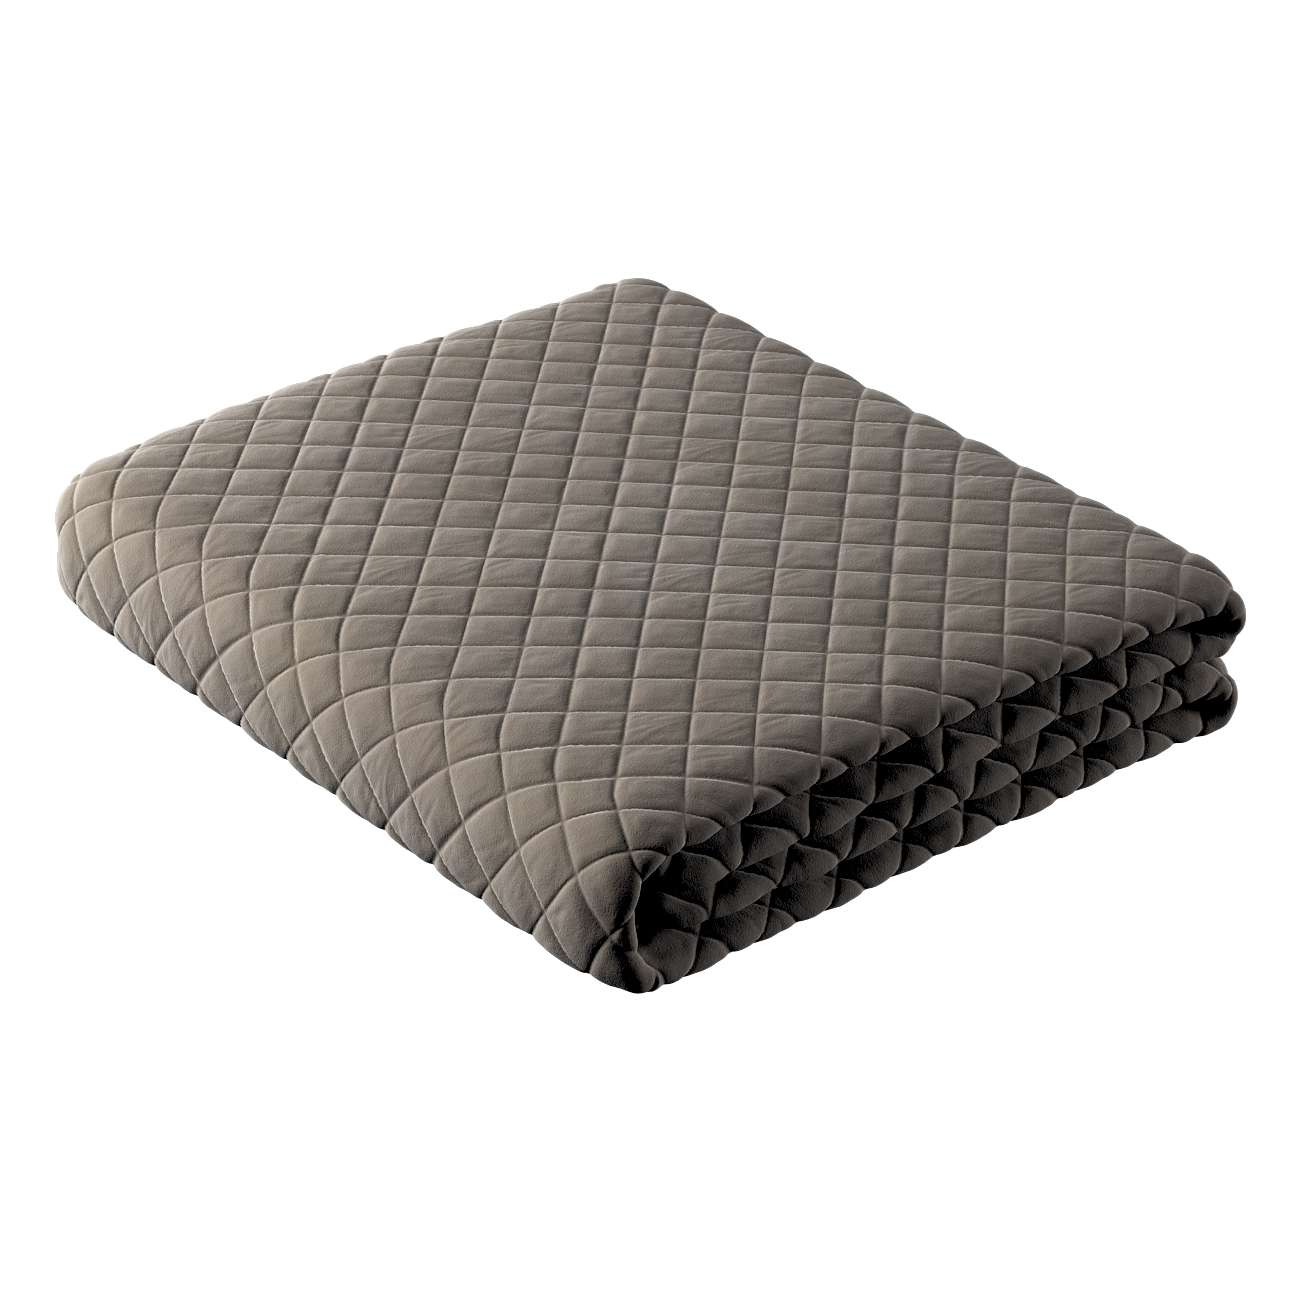 Posh Velvet Bedspread - grey/beige